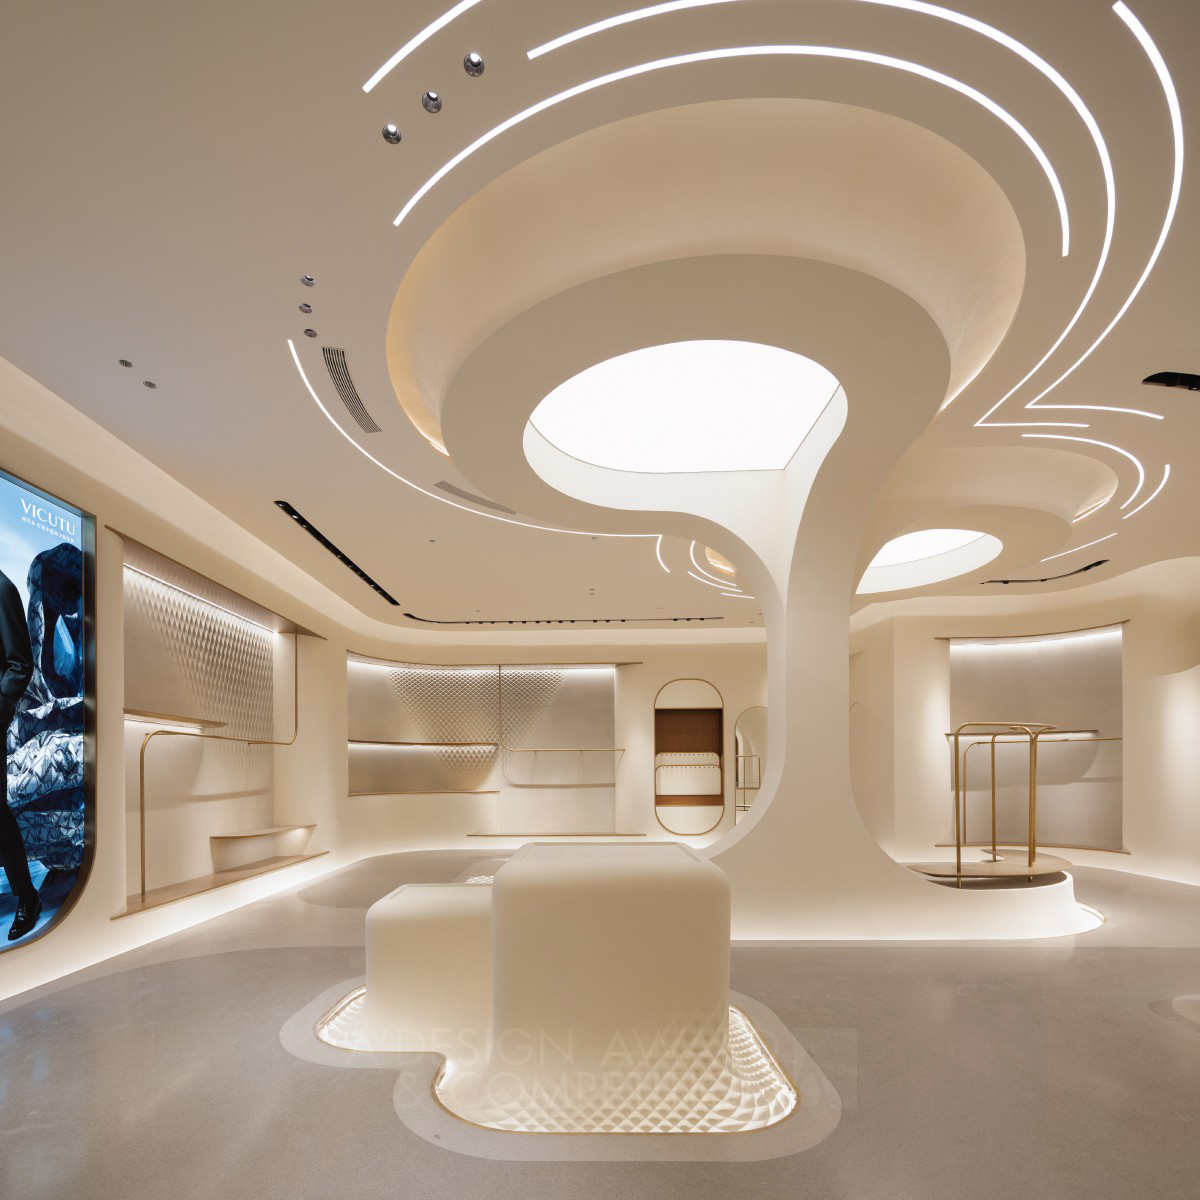 反静力建筑设计的Vicutu概念店：未来主义的时尚体验